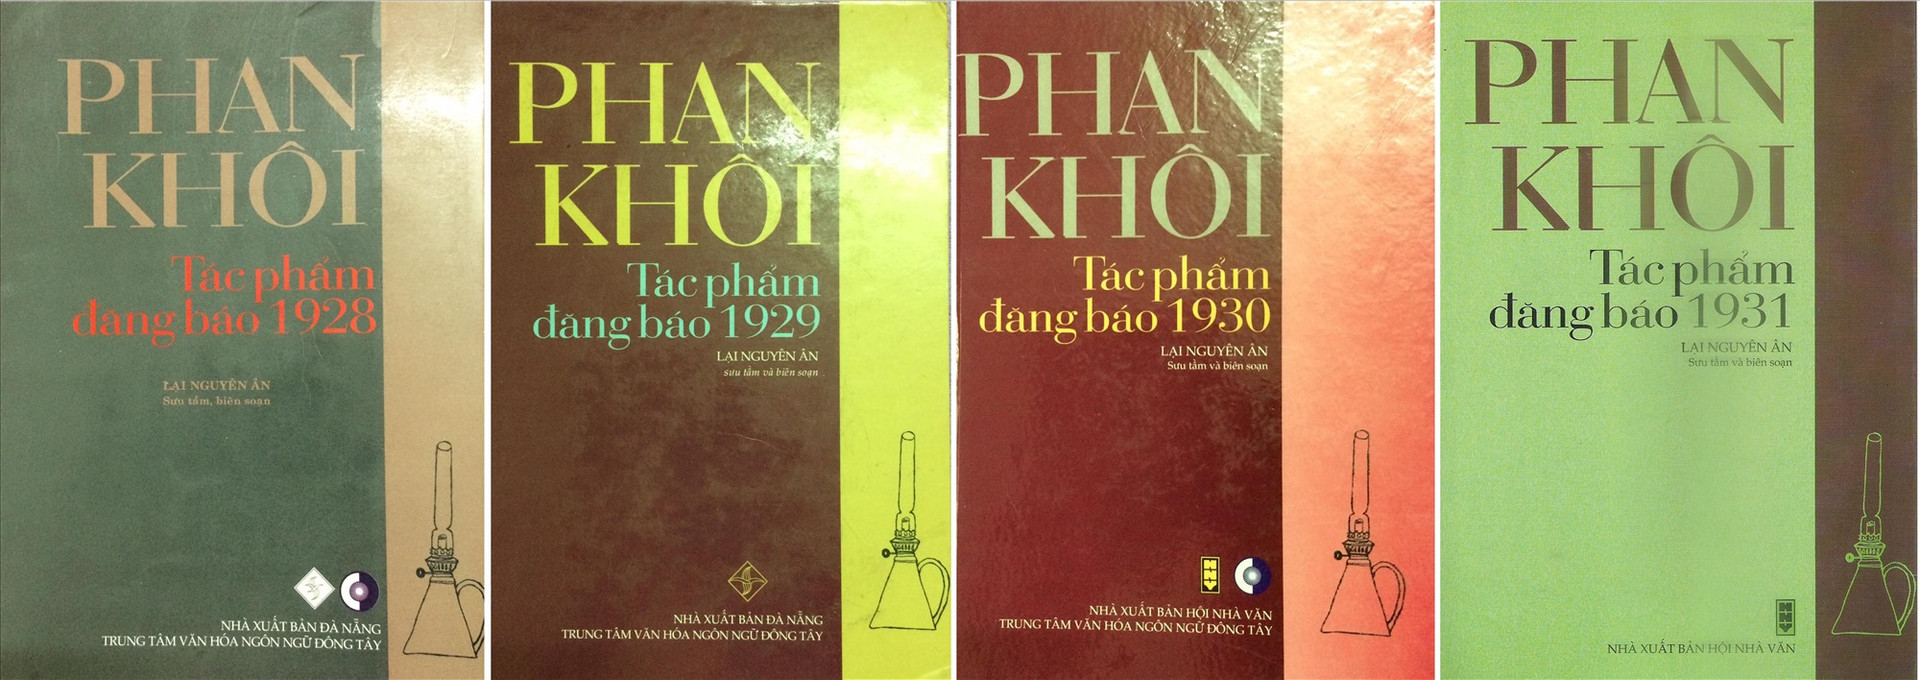 Một vài cuốn trong bộ sách Phan Khôi - Tác phẩm đăng báo do nhà nghiên cứu Lại Nguyên Ân thực hiện.